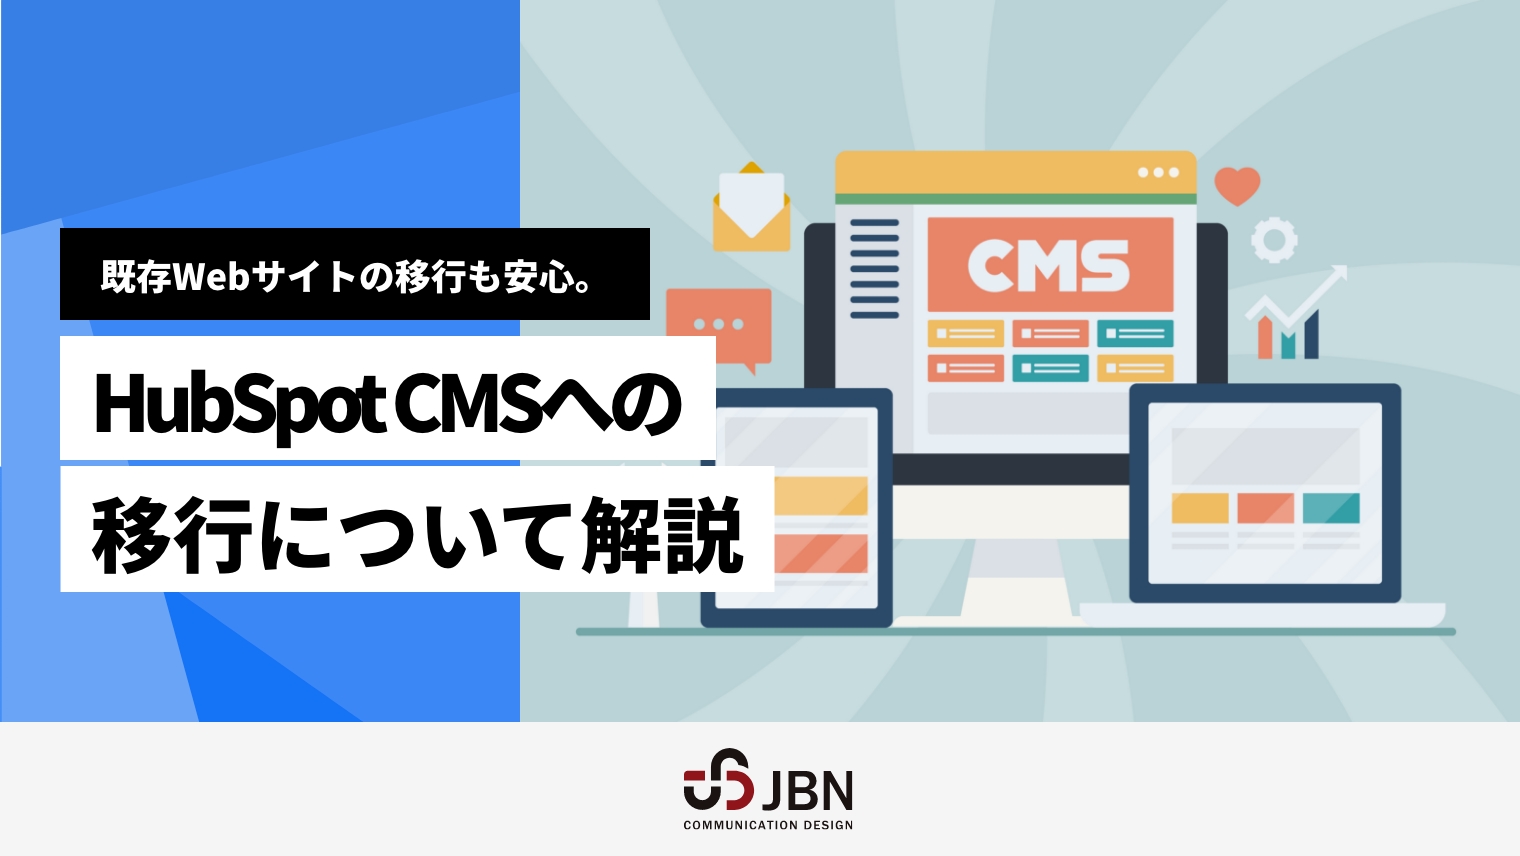 既存Webサイトの移行も安心。HubSpot CMSへの移行について解説